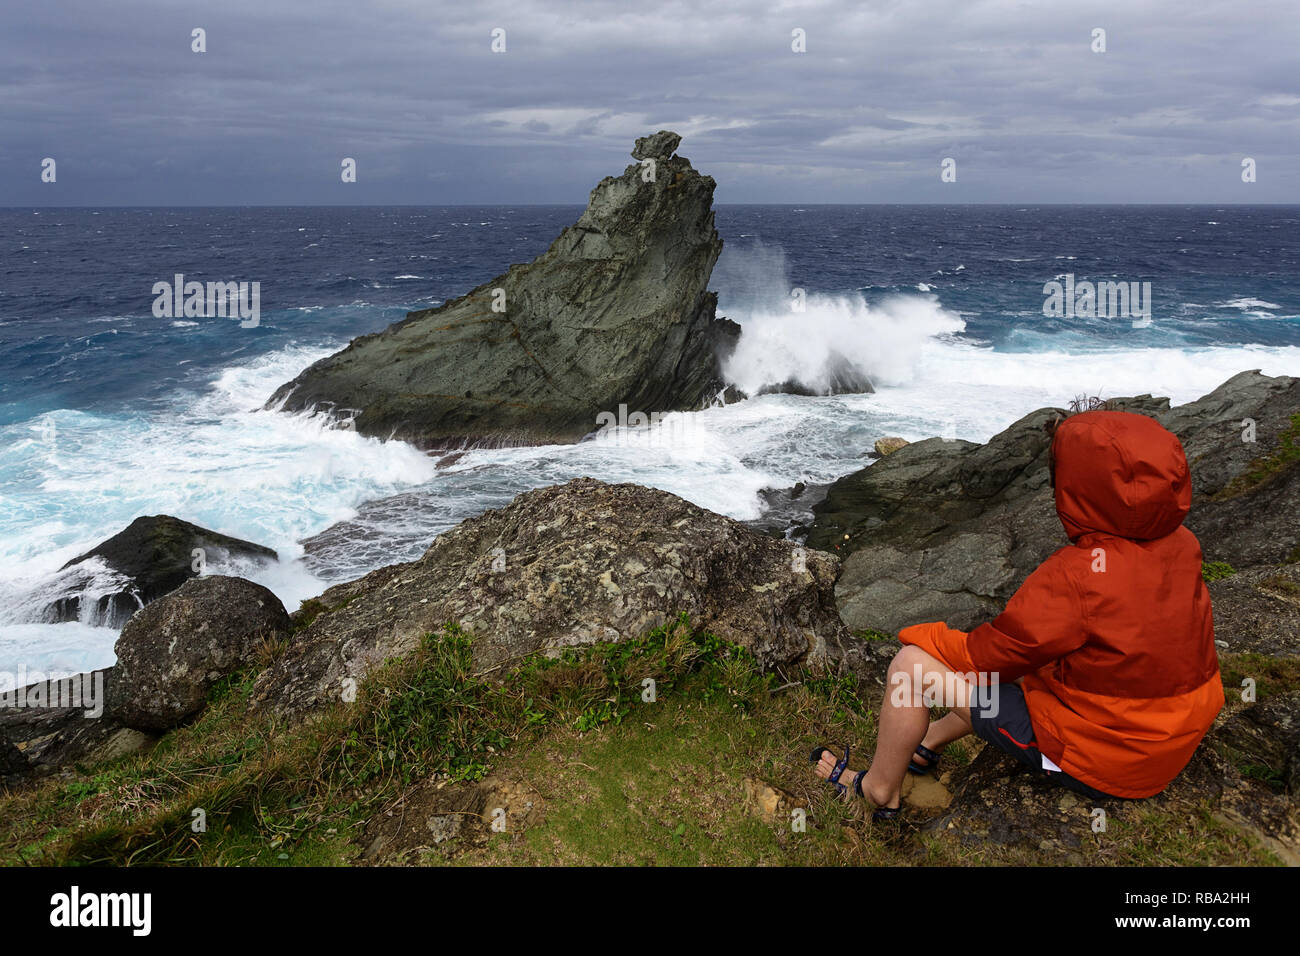 Jeune garçon à la recherche à l'état de la mer sur la côte sauvage à Uganzaki dans le phare de l'Île Ishigaki, Japon Okinawa Banque D'Images